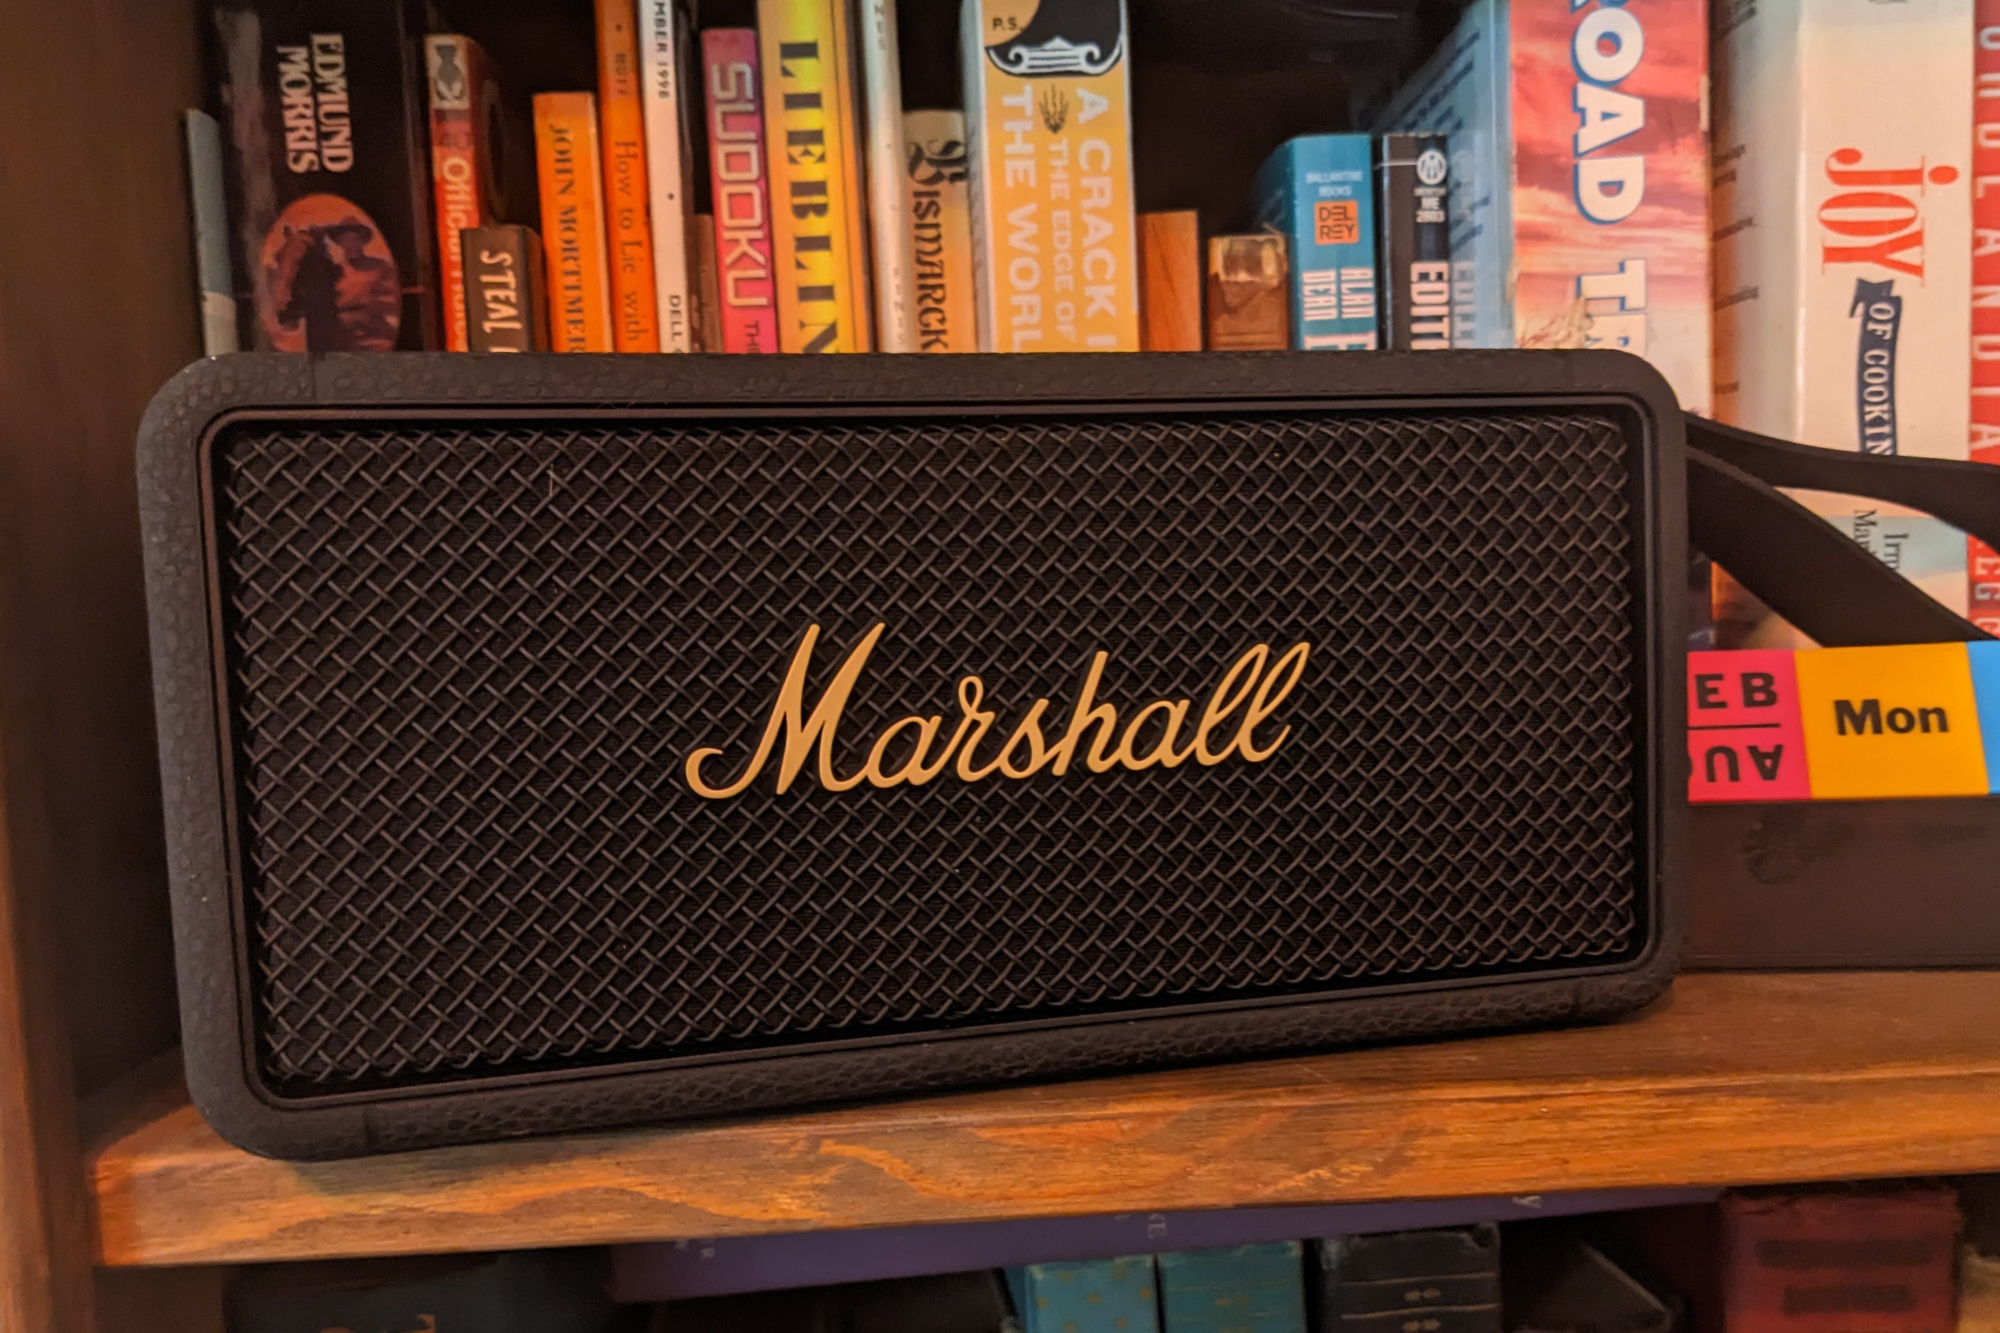 Marshall Middleton -- Best mid-priced Bluetooth speaker